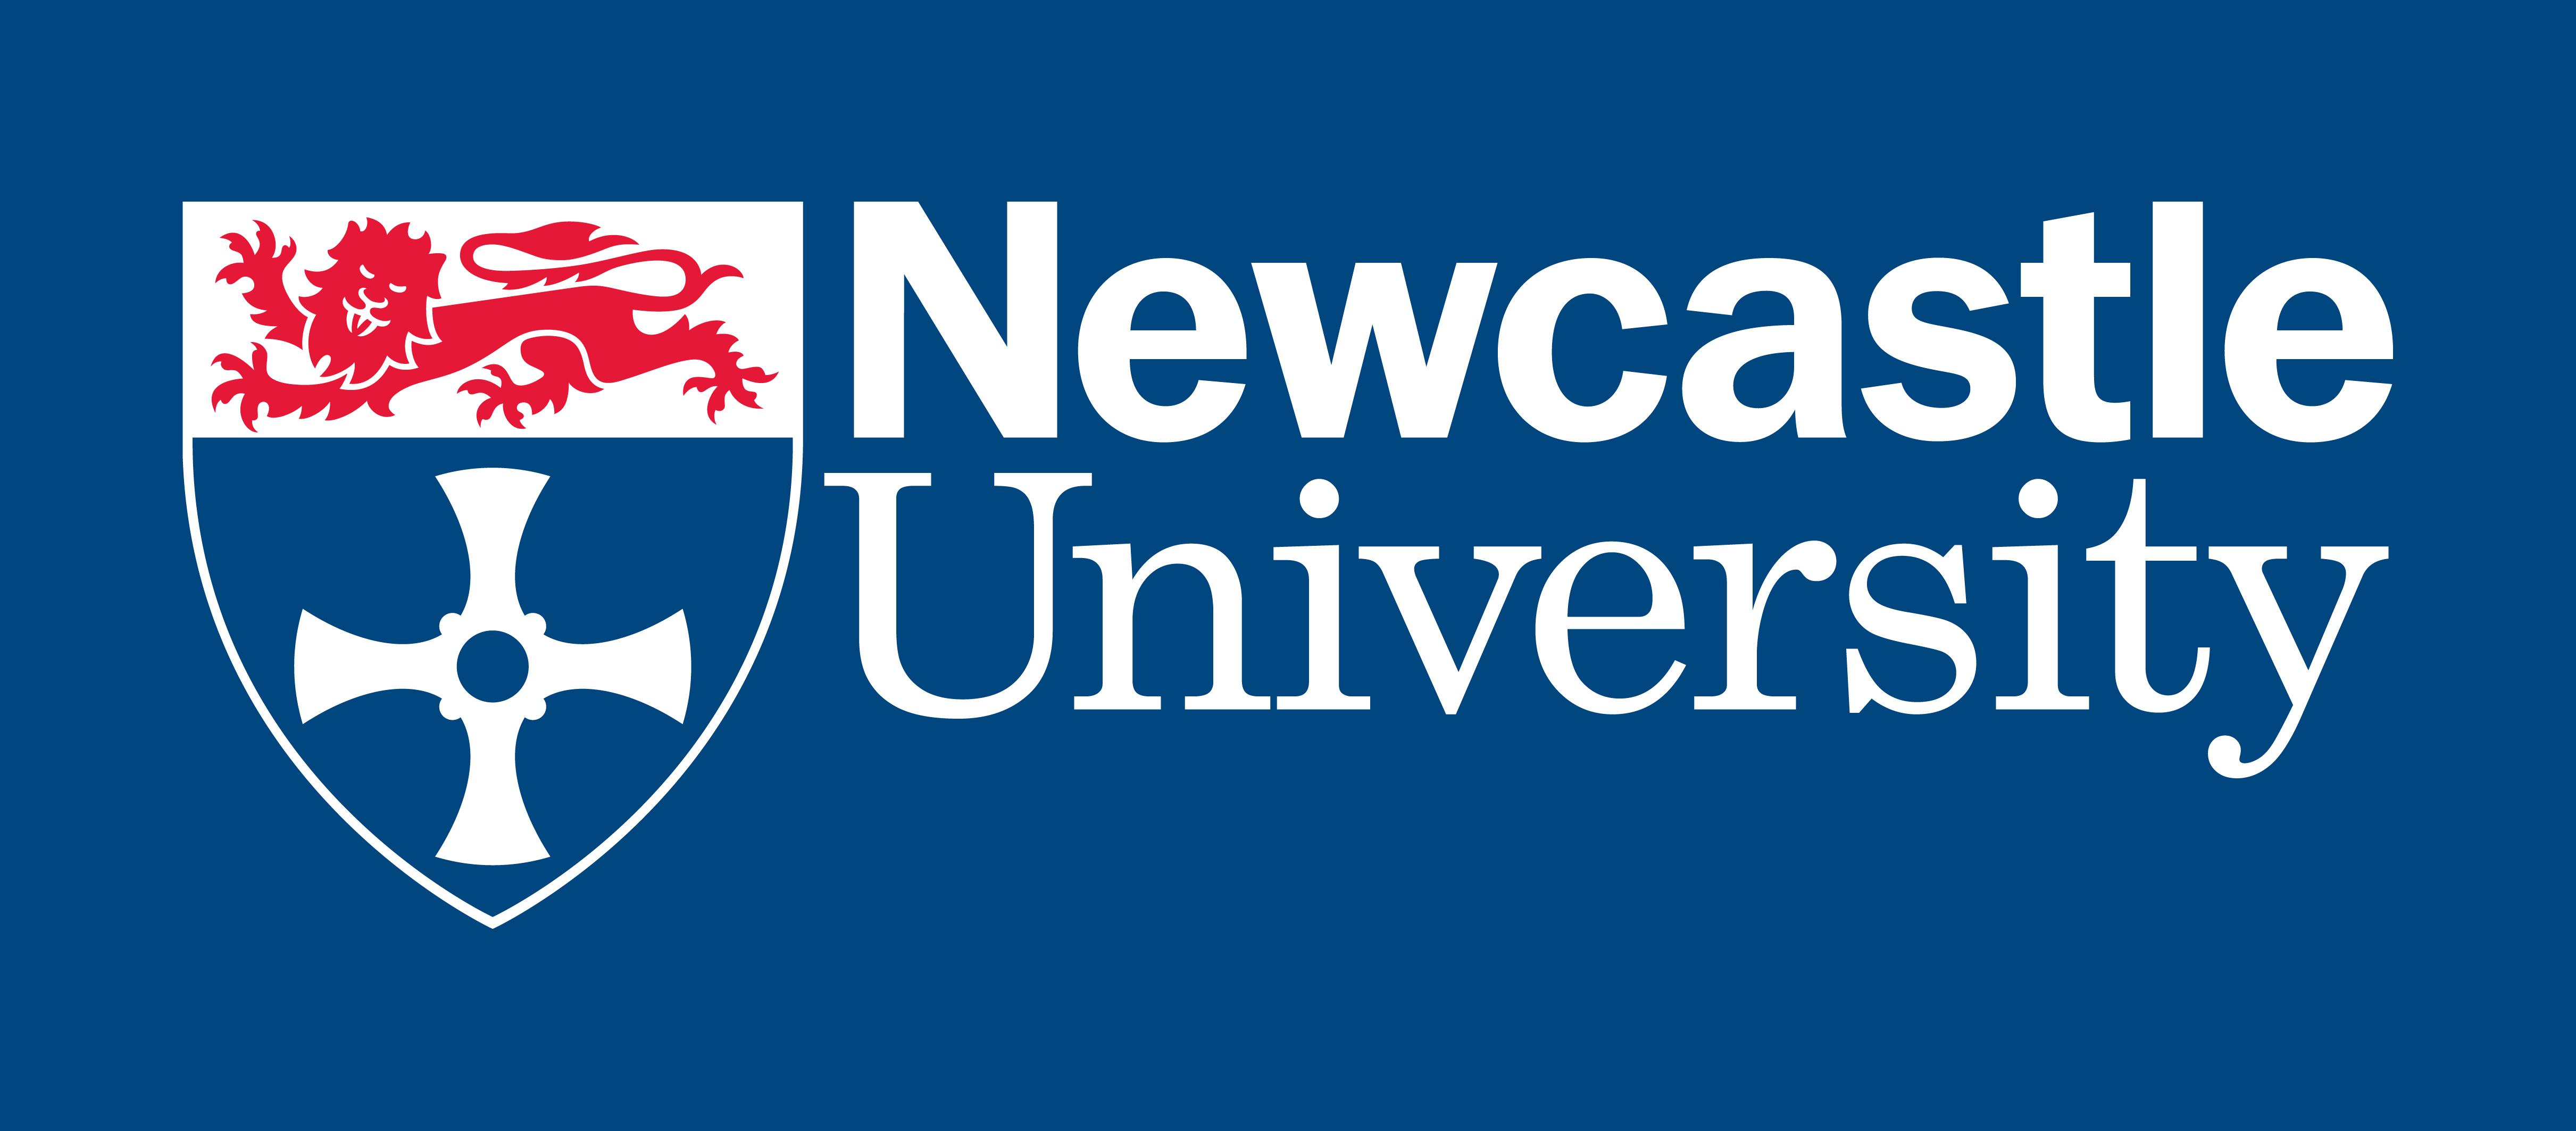 University of Newcastle Logo photo - 1